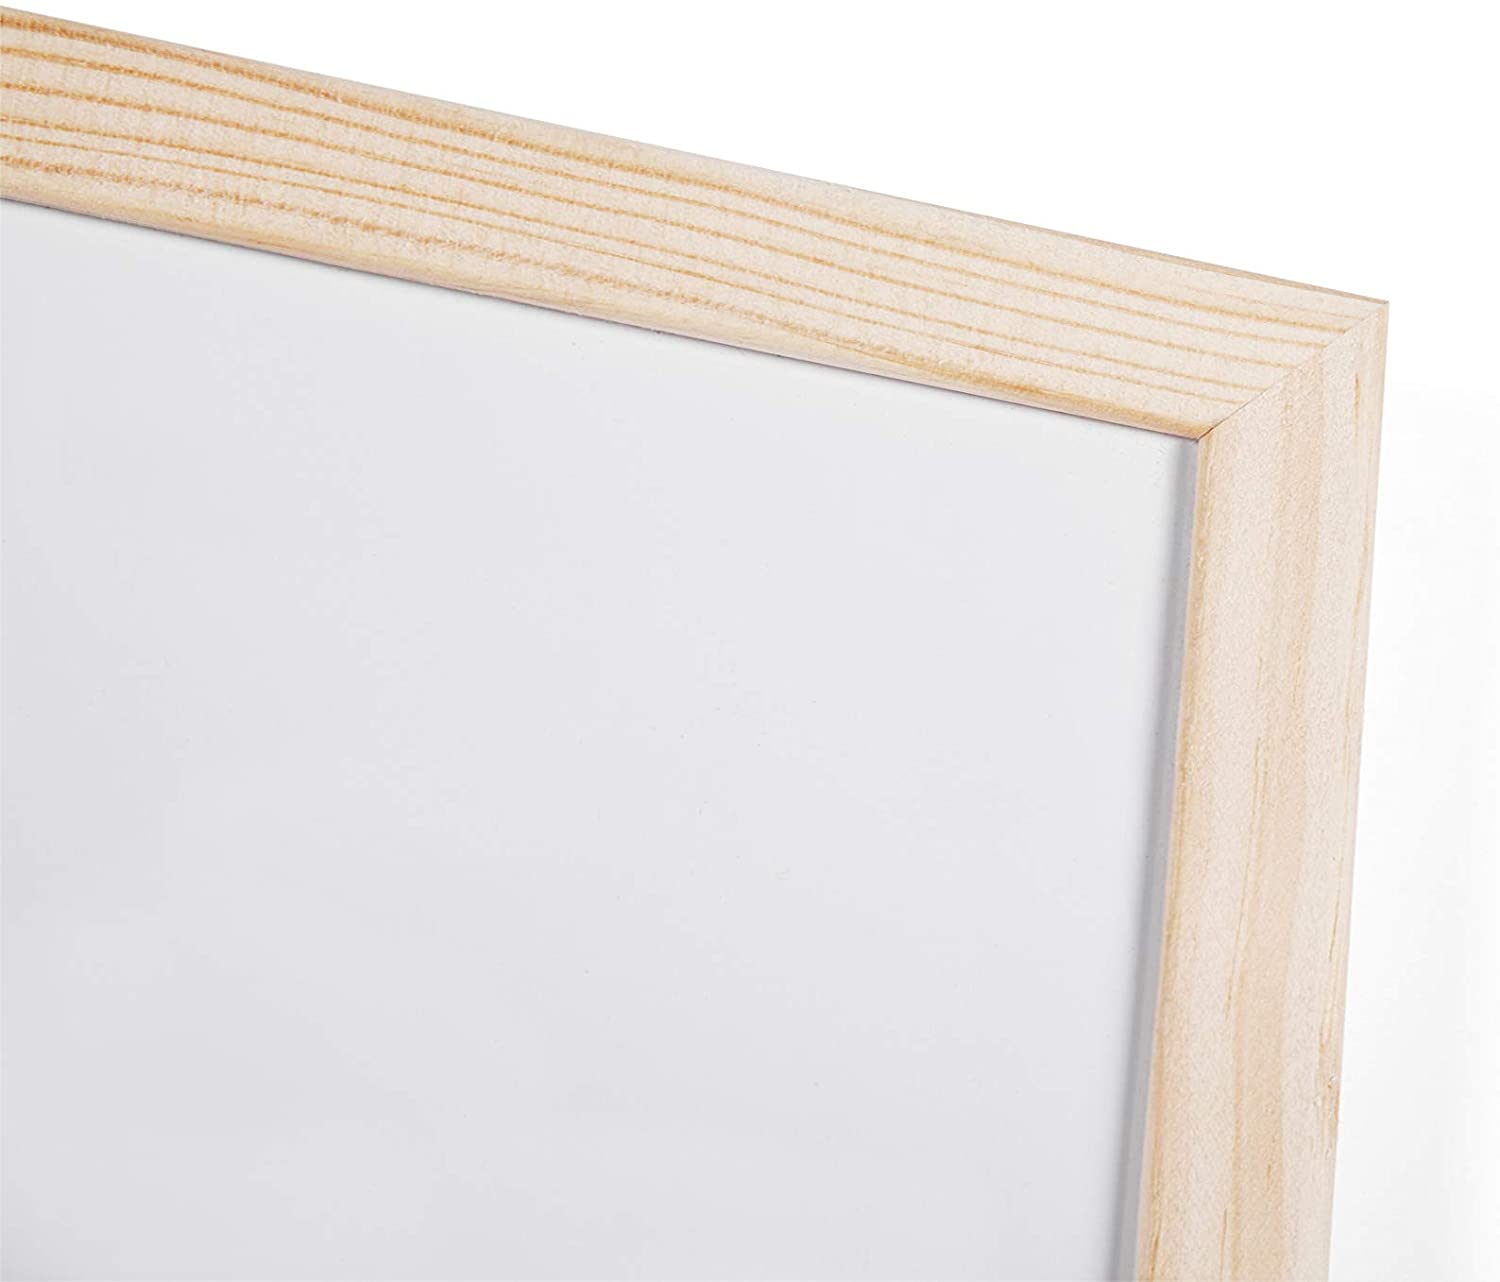 Bi-Office Weiwandtafel mit Holzrahmen, 900 x 600 mm